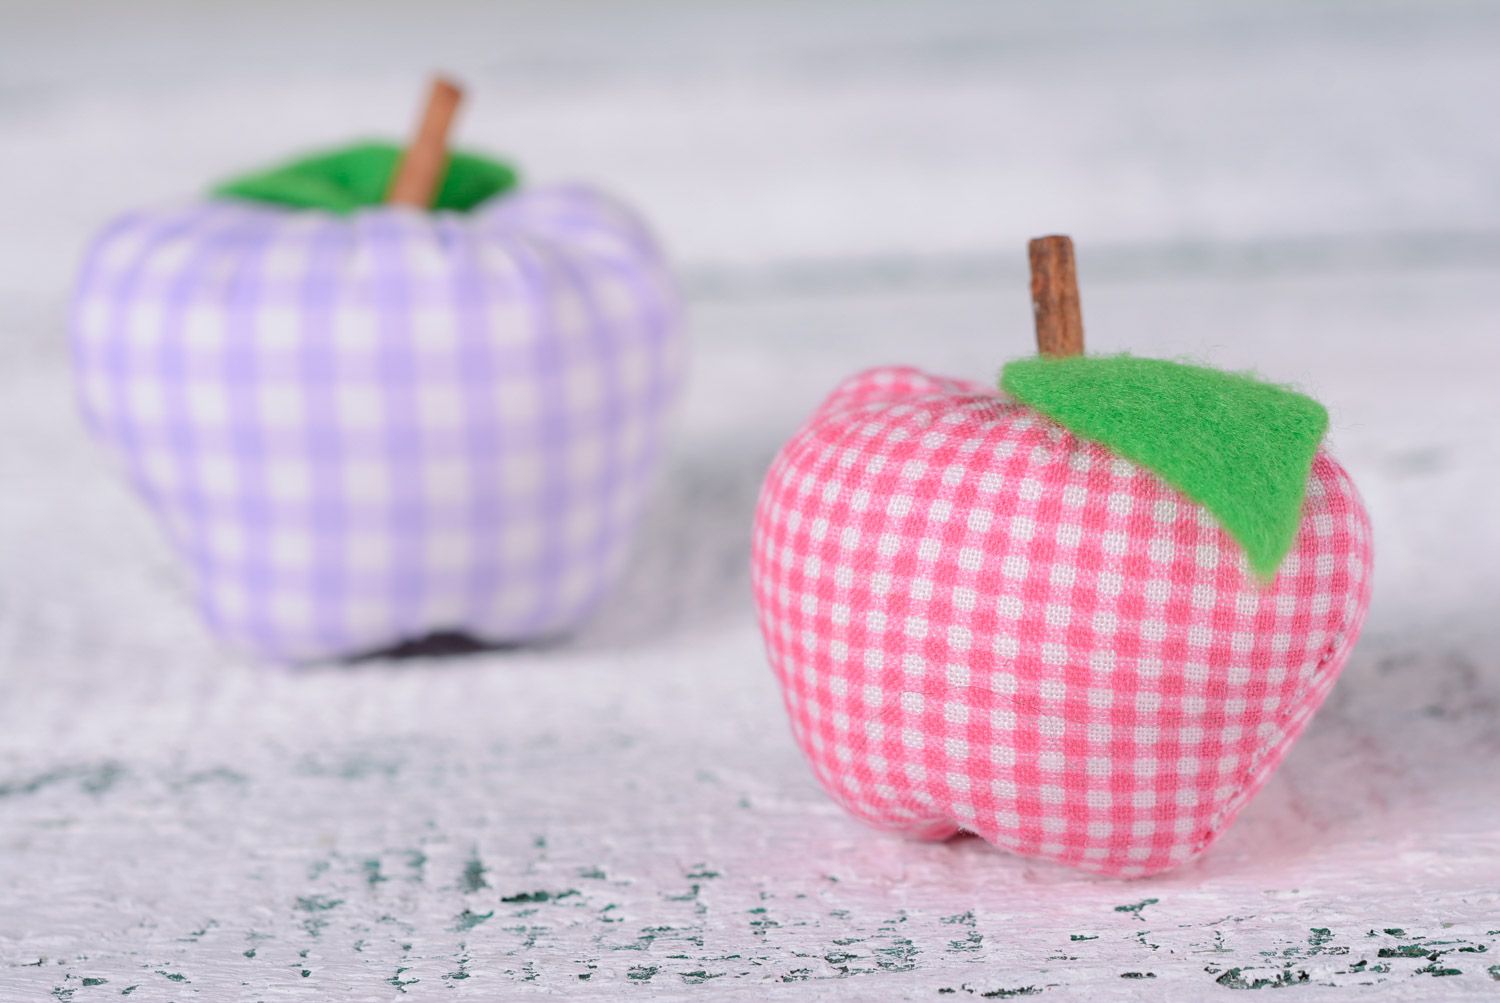 Декоративная игрушка для интерьера в виде маленького яблока мягкая пошитая вручную фото 5